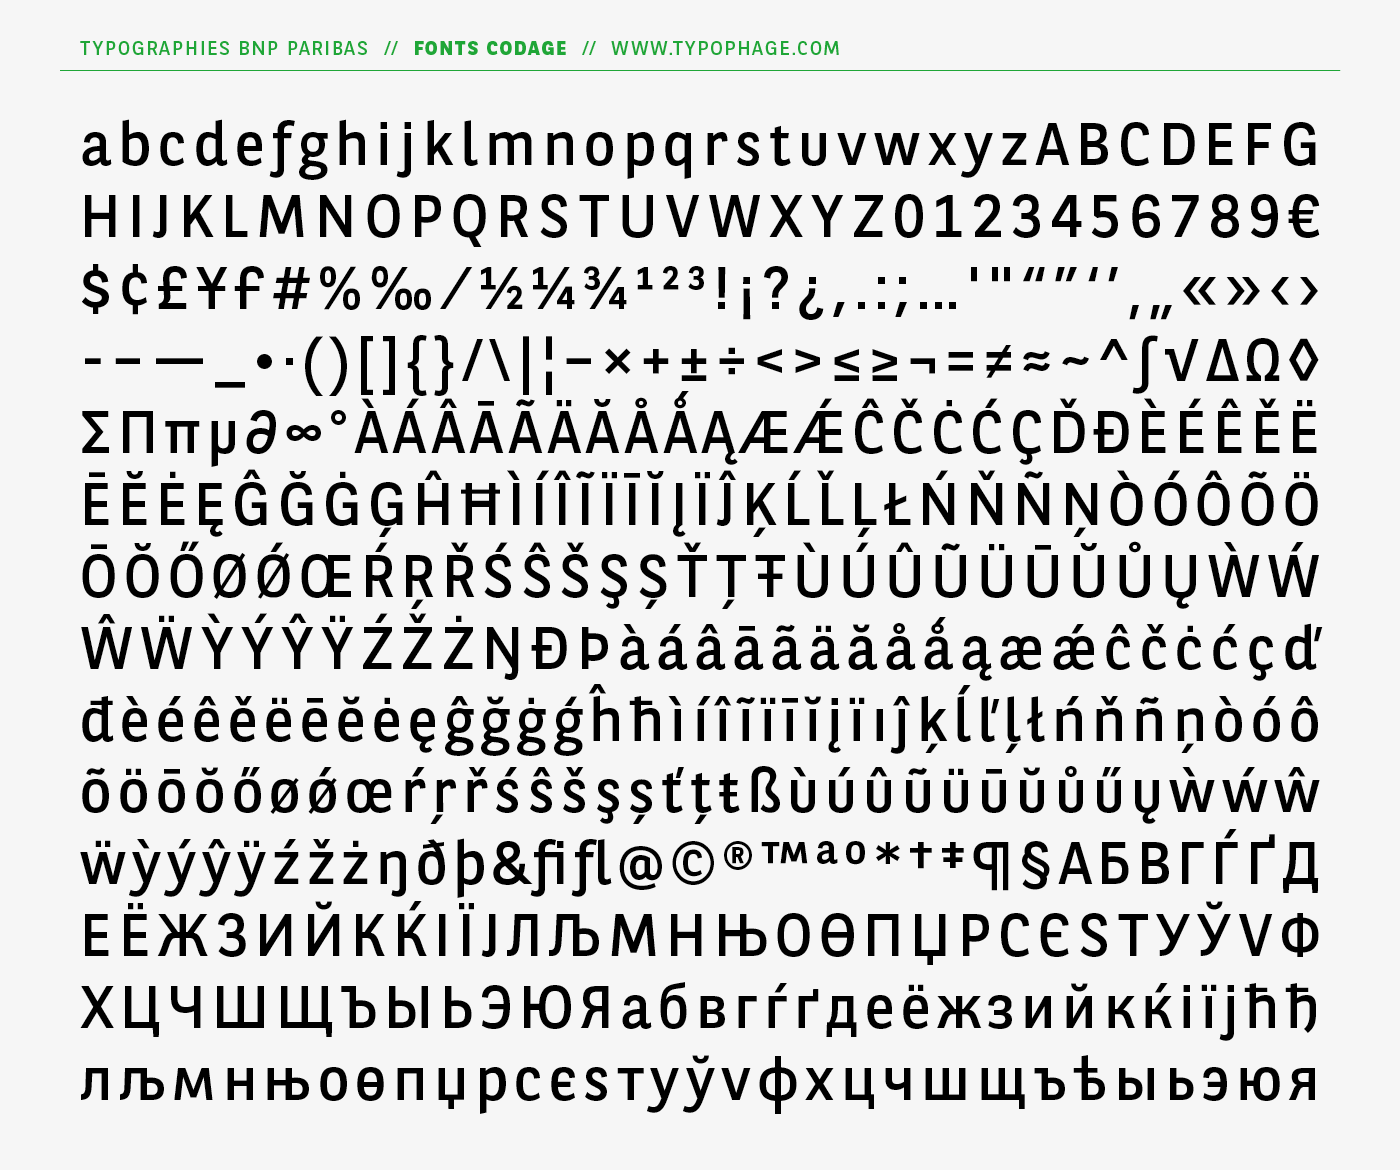 Typographies d'identité BNP Paribas. Alphabets exclusifs par Christophe Badani, www.typophage.com.